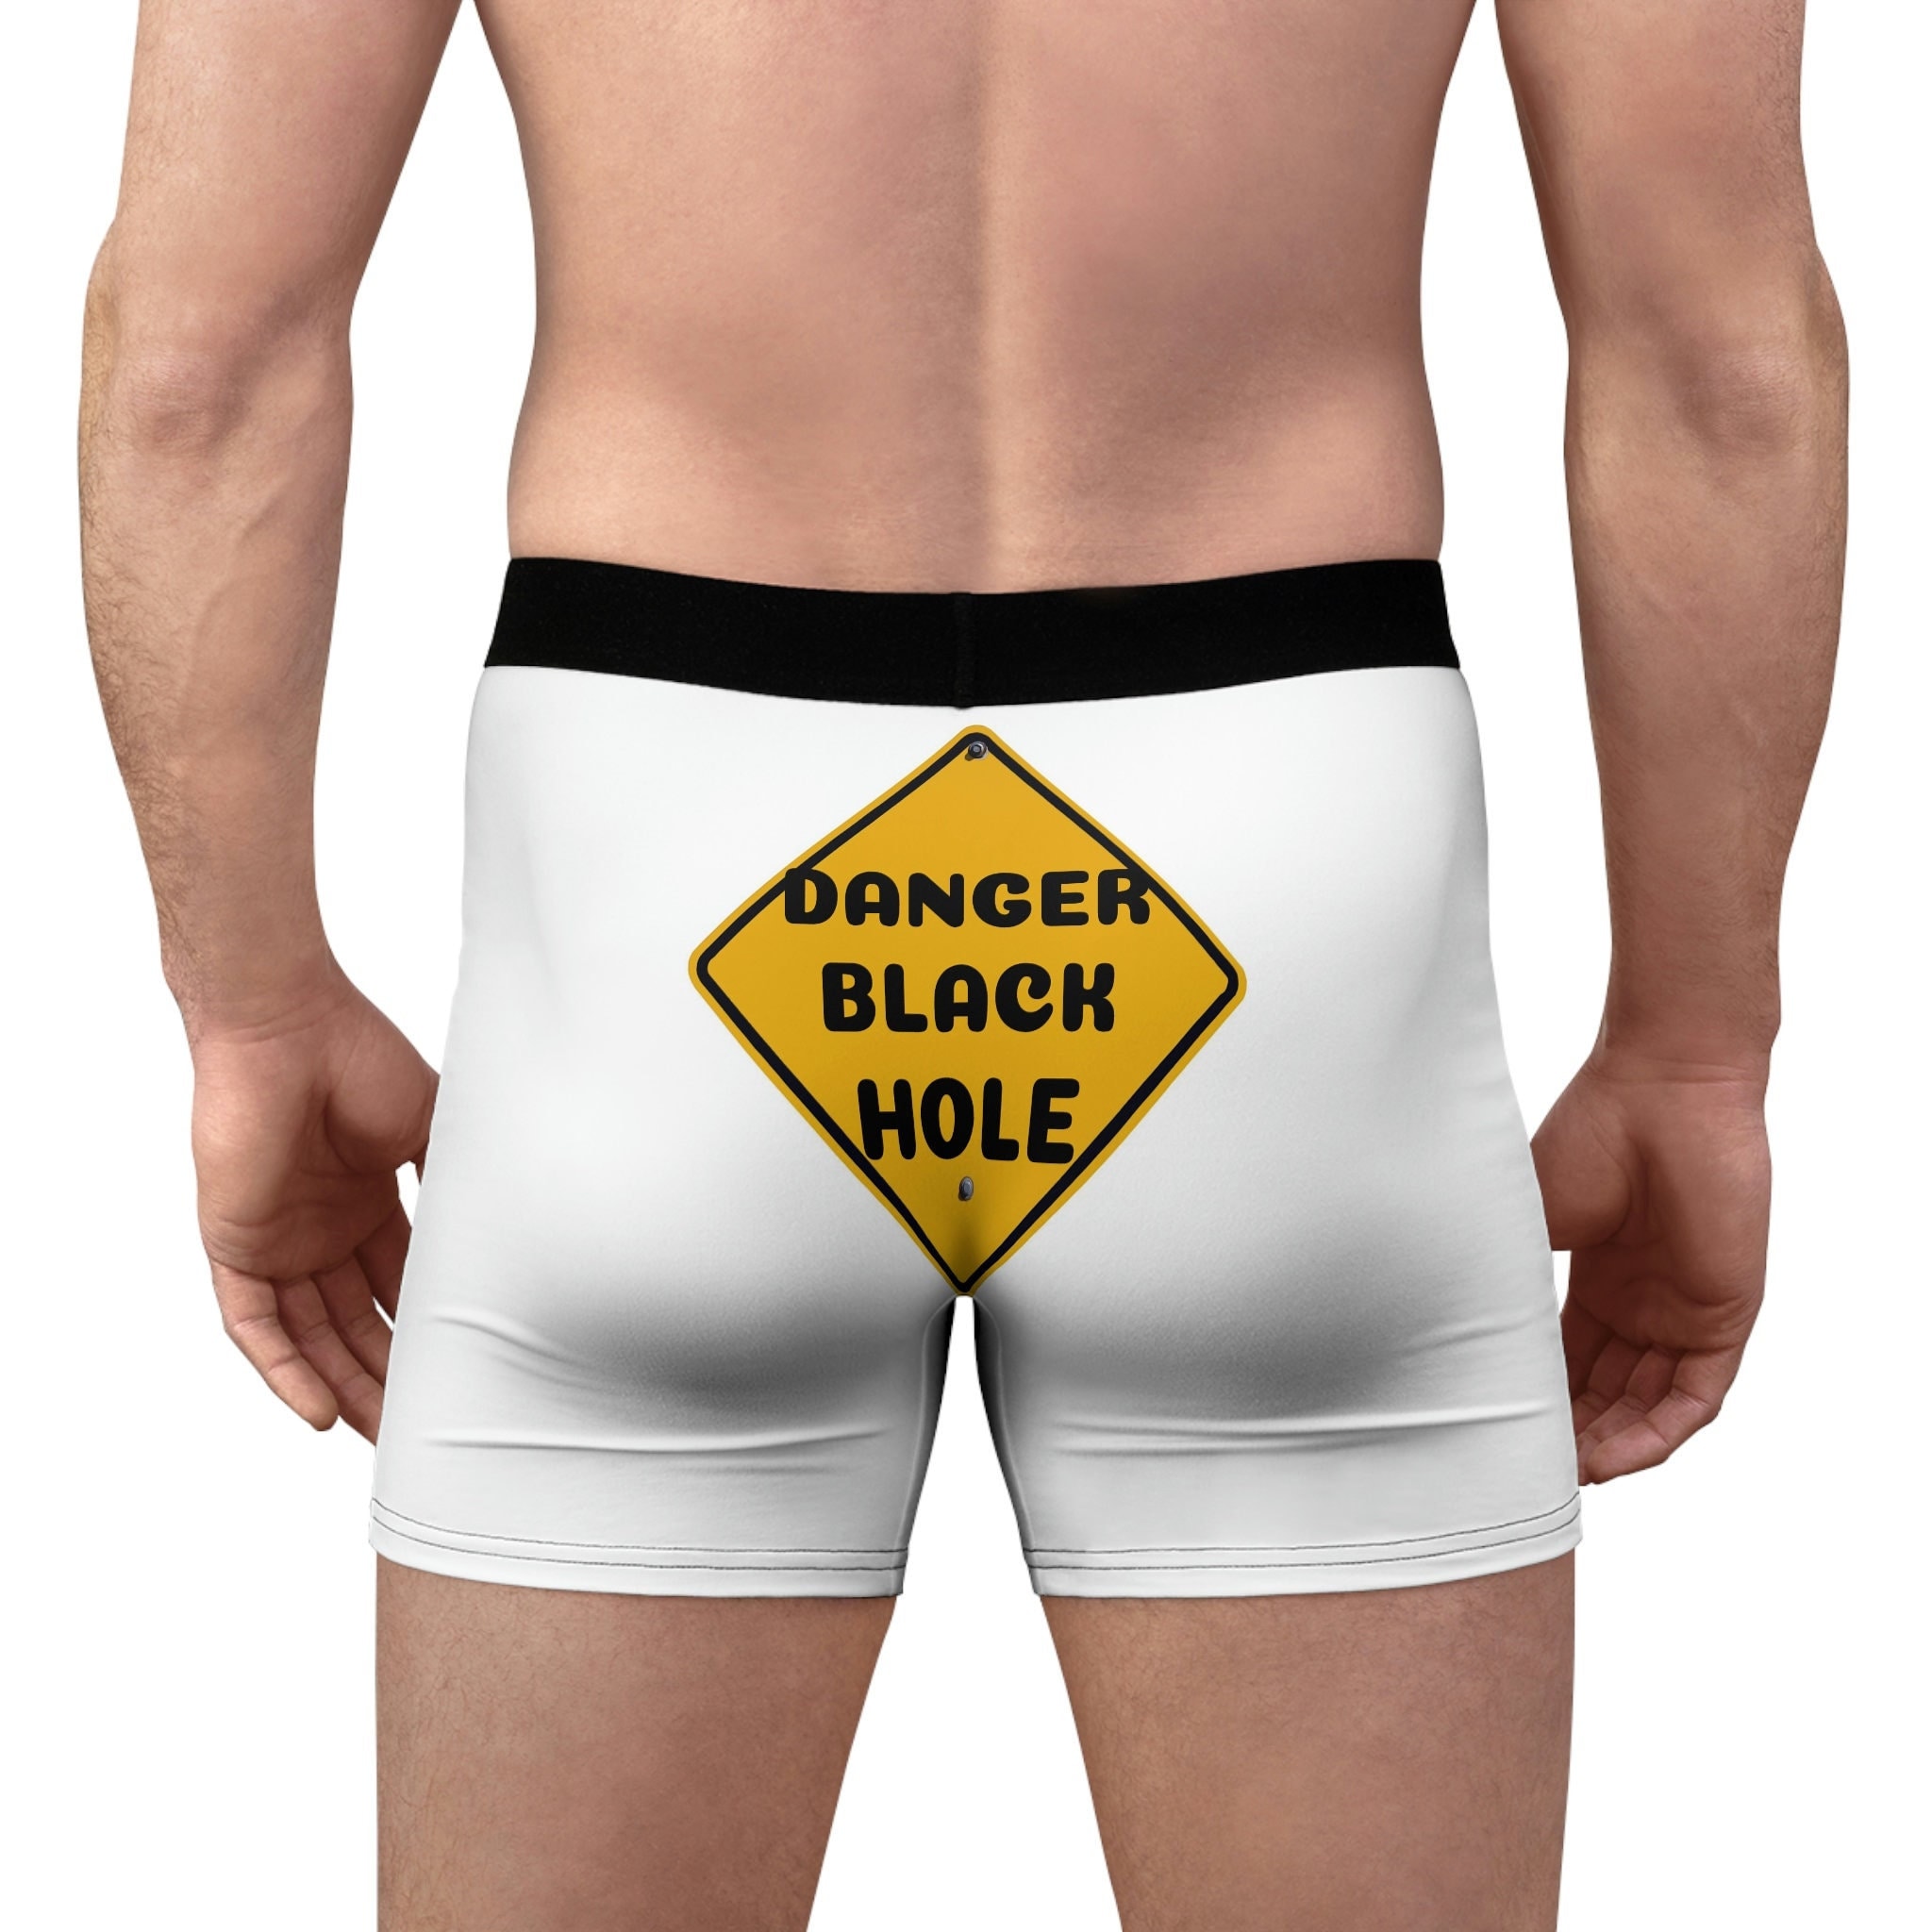 Danger Black Hole, Men's Boxer Briefs, Gag Gift, Adult Humor